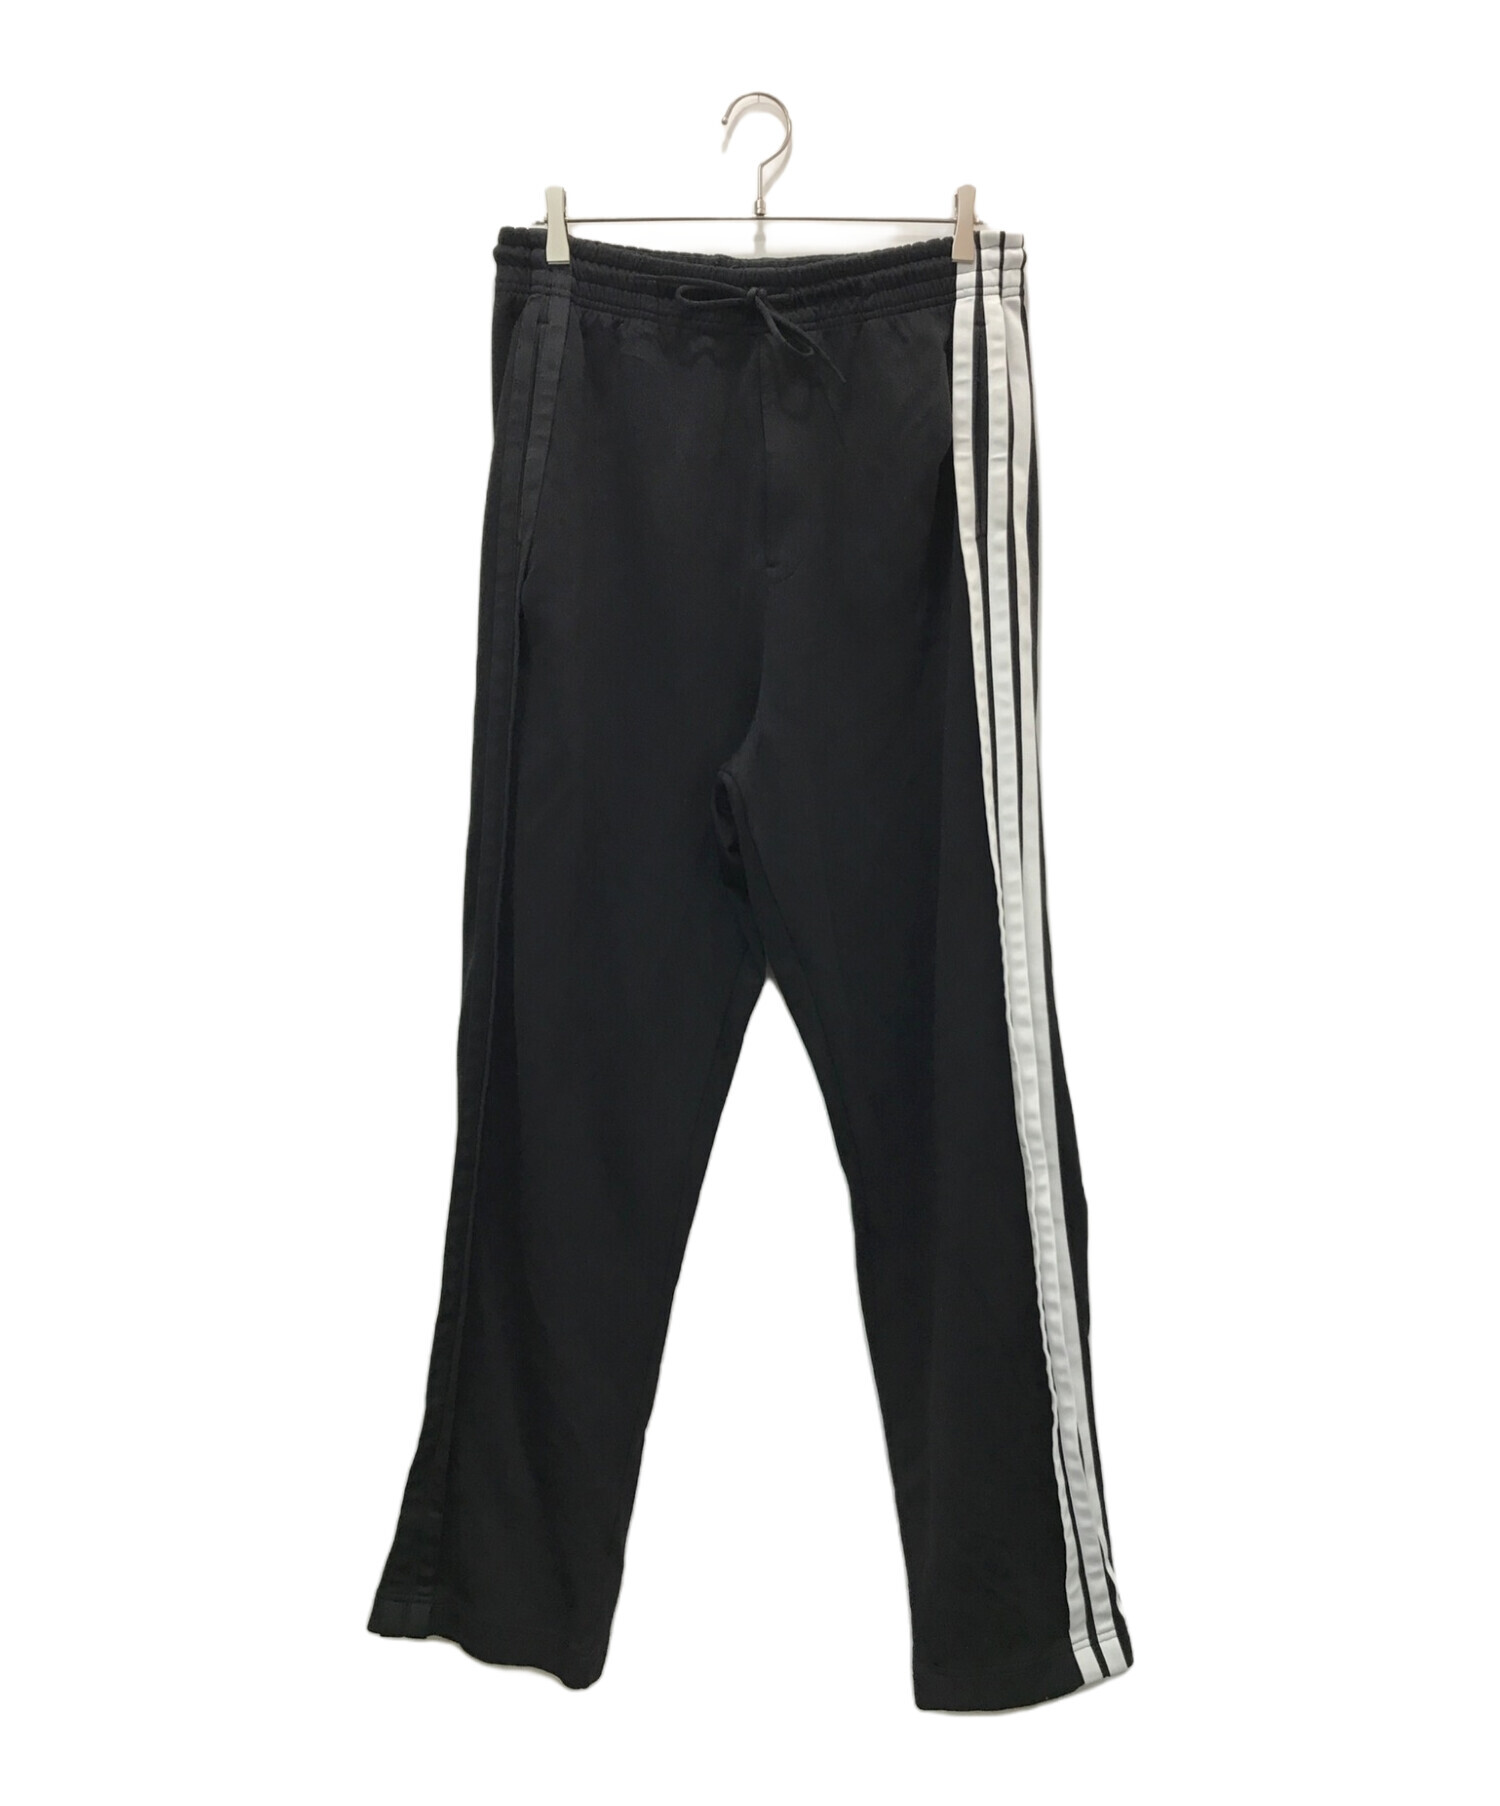 Y-3 (ワイスリー) adidas (アディダス) YOHJI YAMAMOTO (ヨウジヤマモト) 3-Stripes Selvedge Wide  Pants ブラック サイズ:M